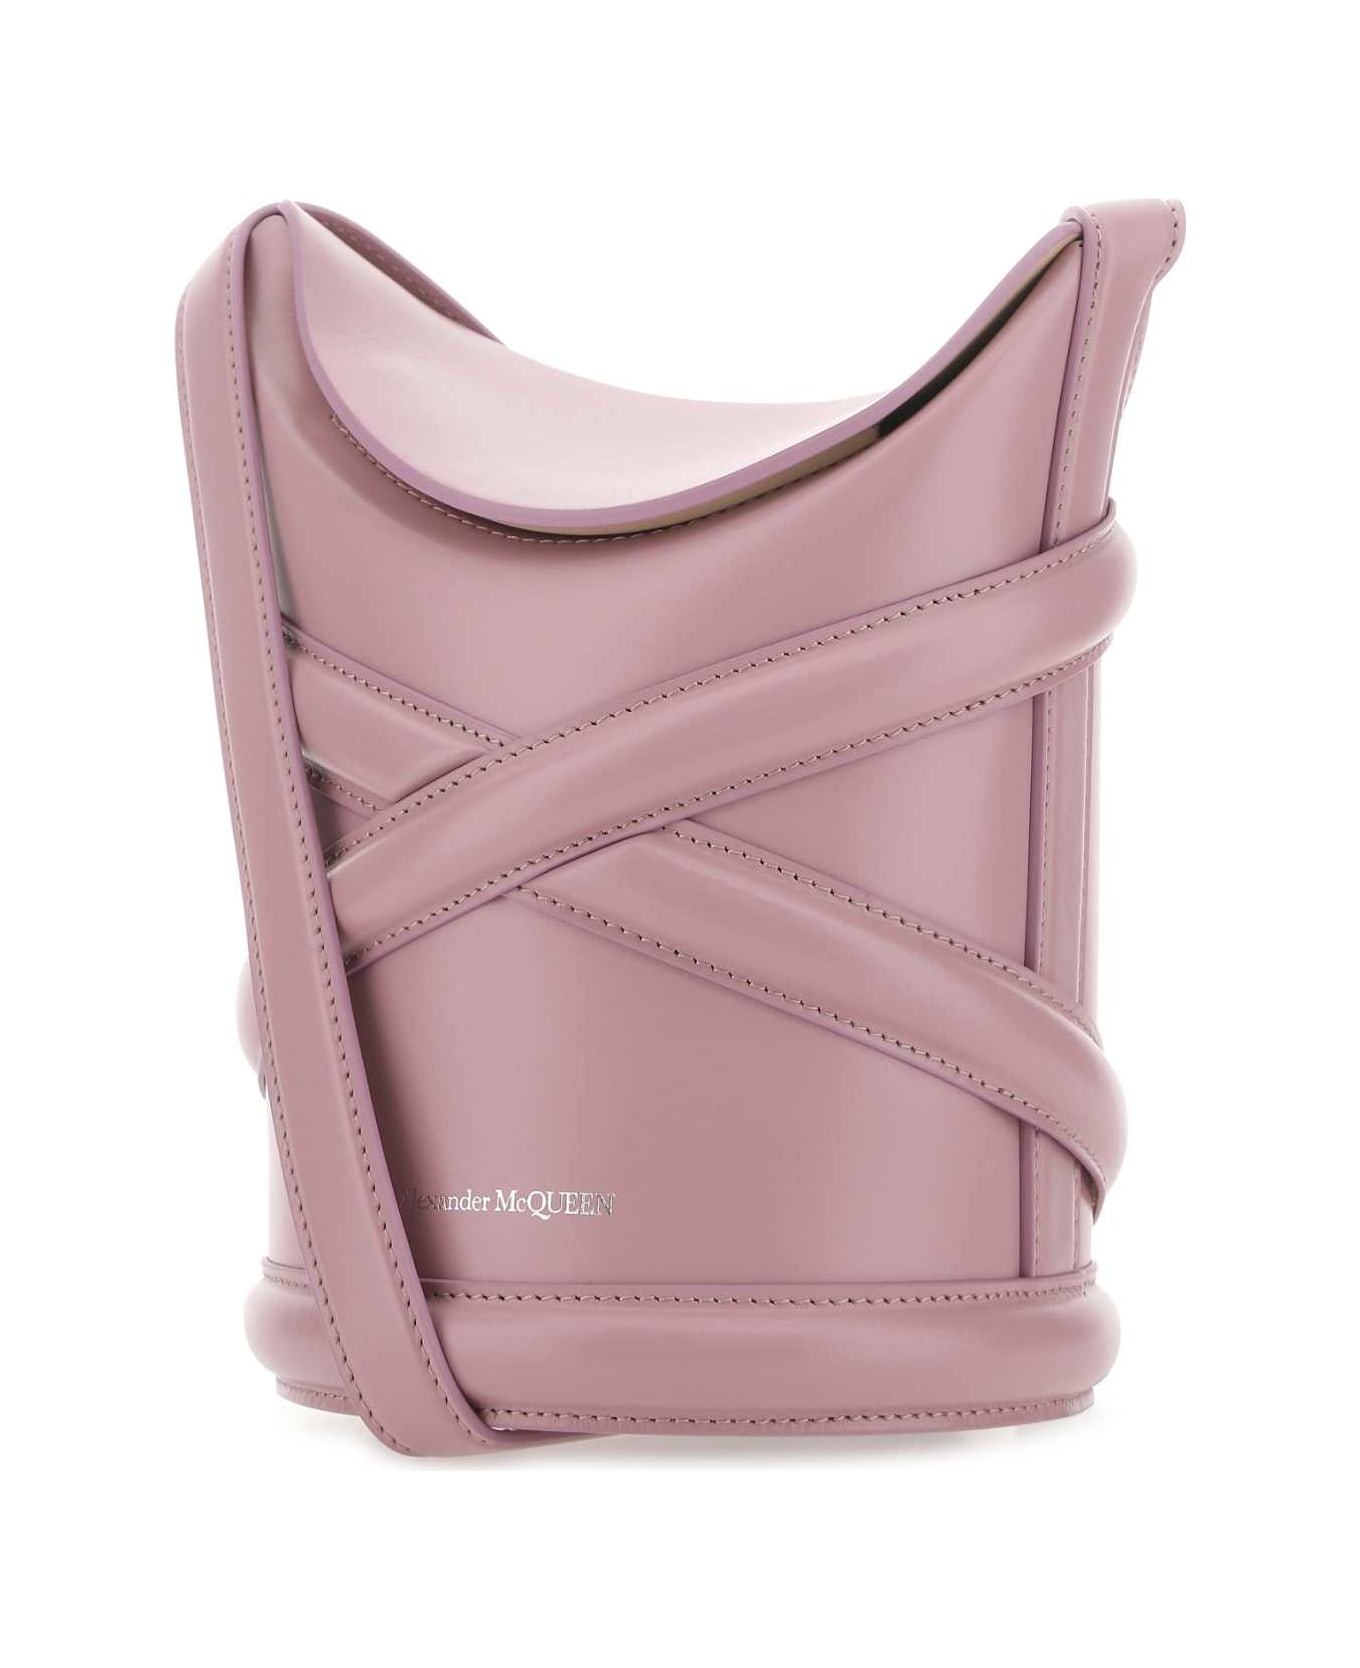 Alexander McQueen Dark Pink Leather The Curve Bucket Bag - 5618